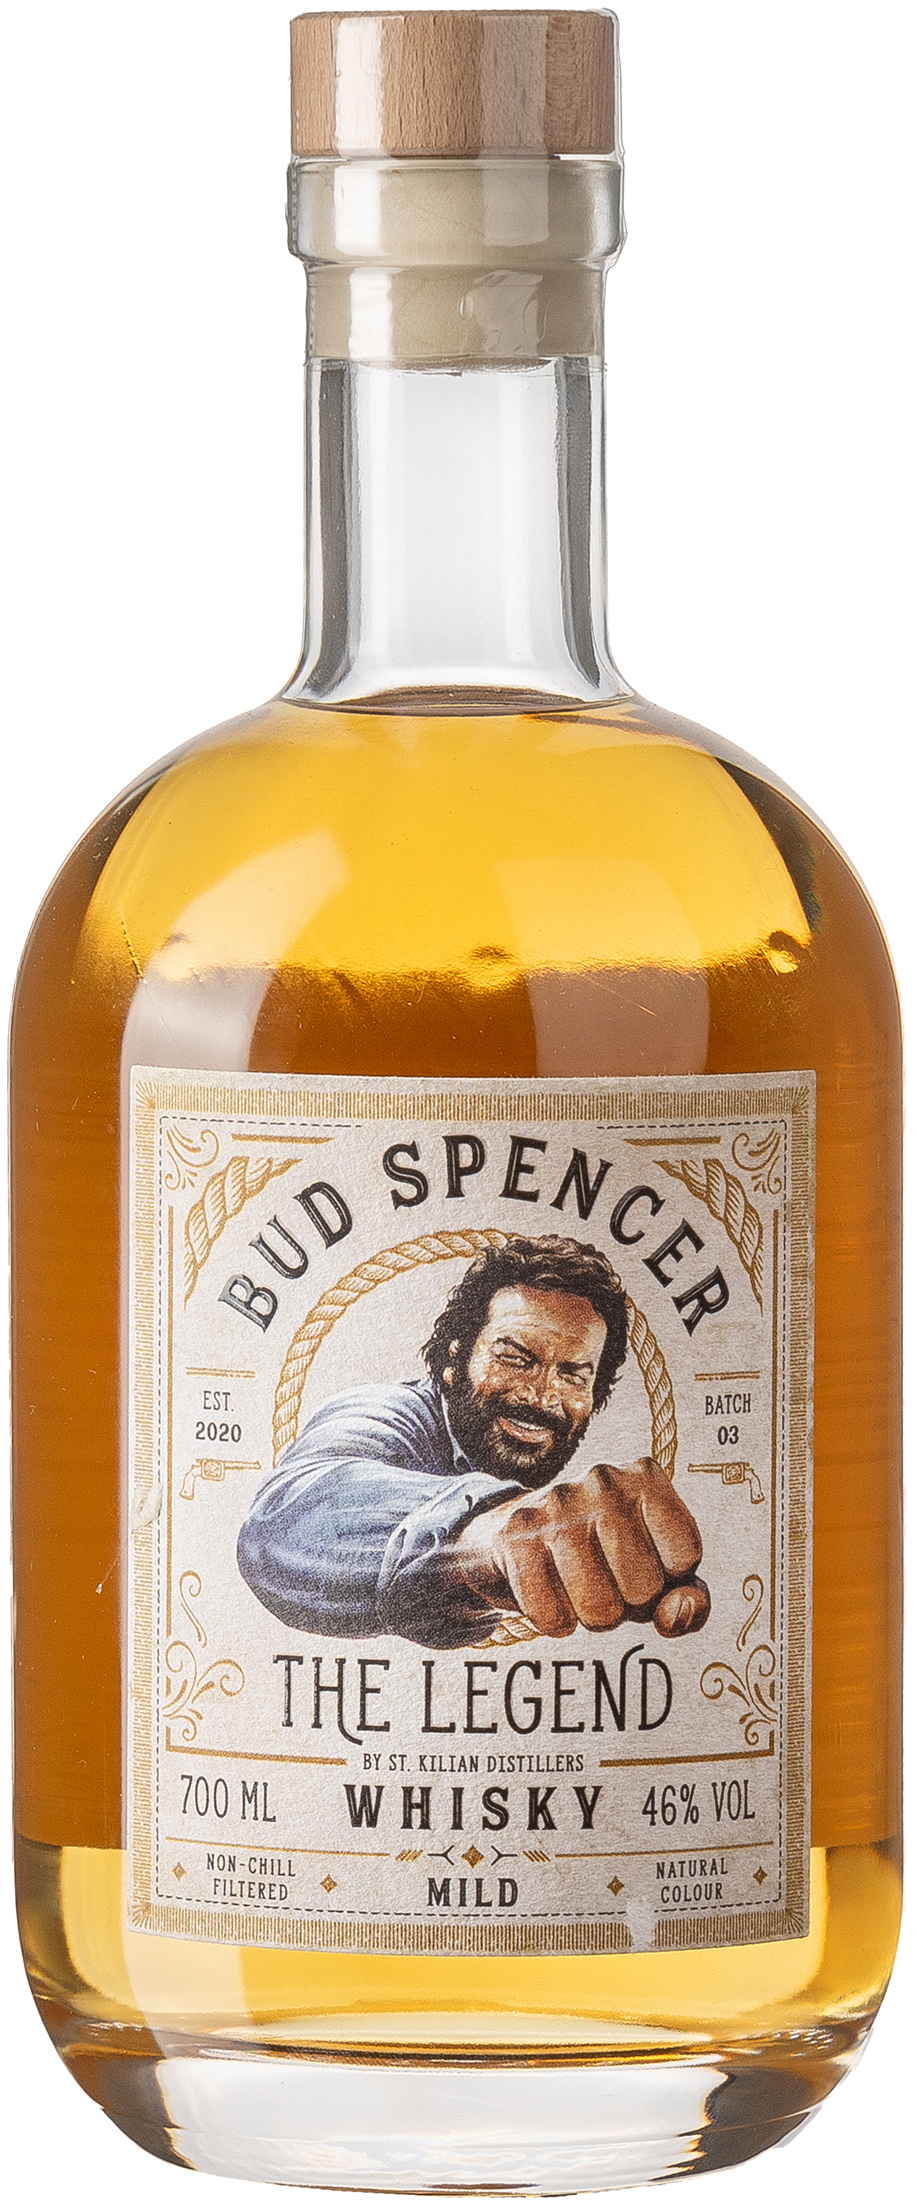 Bud Spencer The Legend Whisky Mild 46% vol. 0,7L 